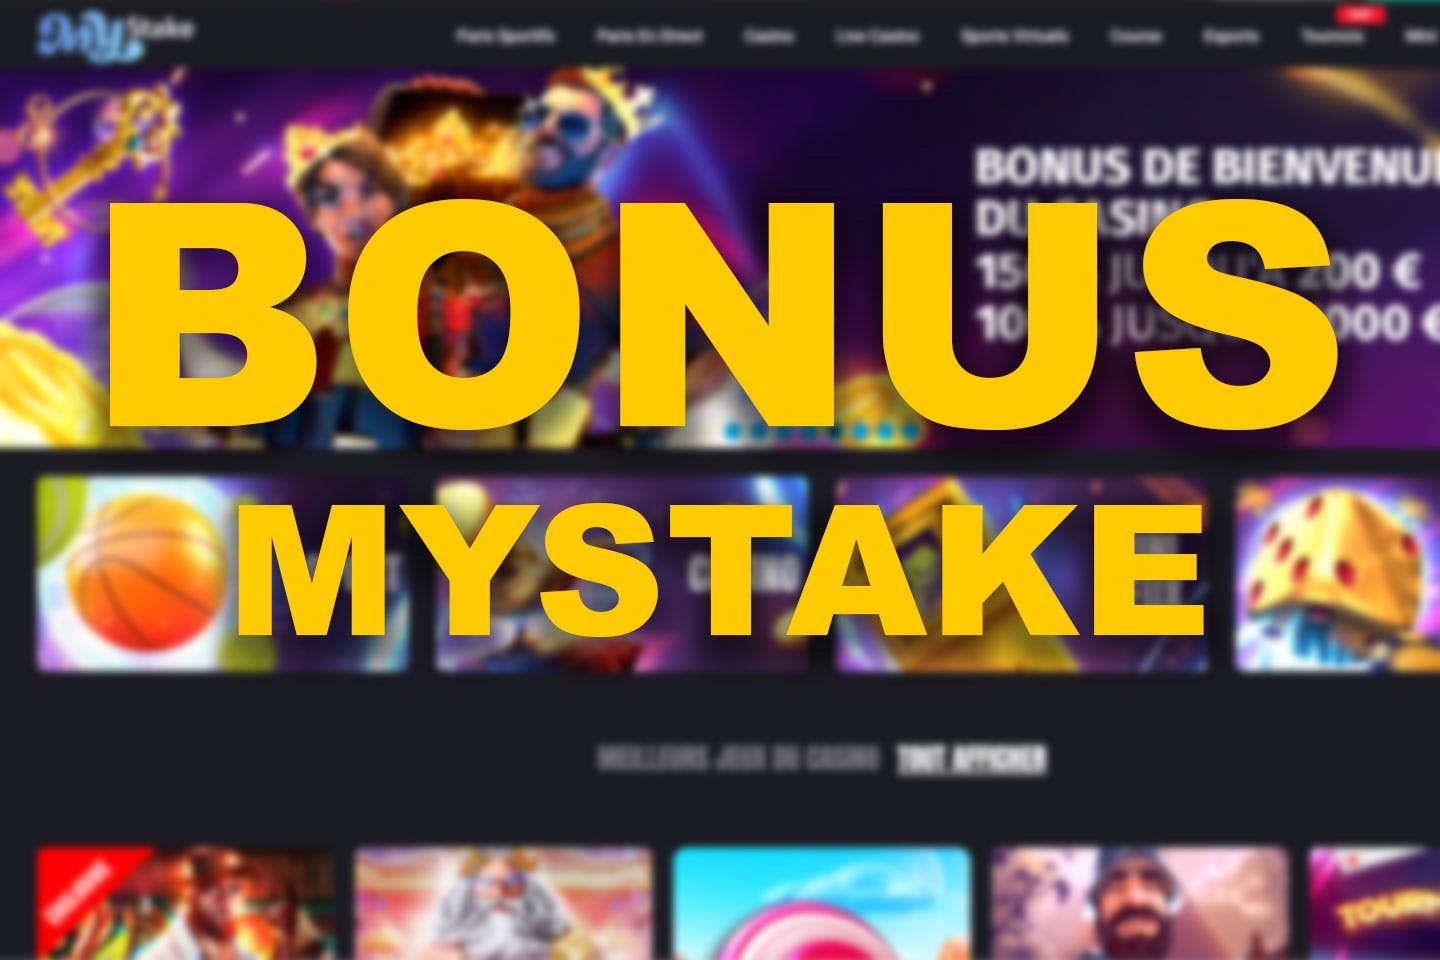 Mystake bonus